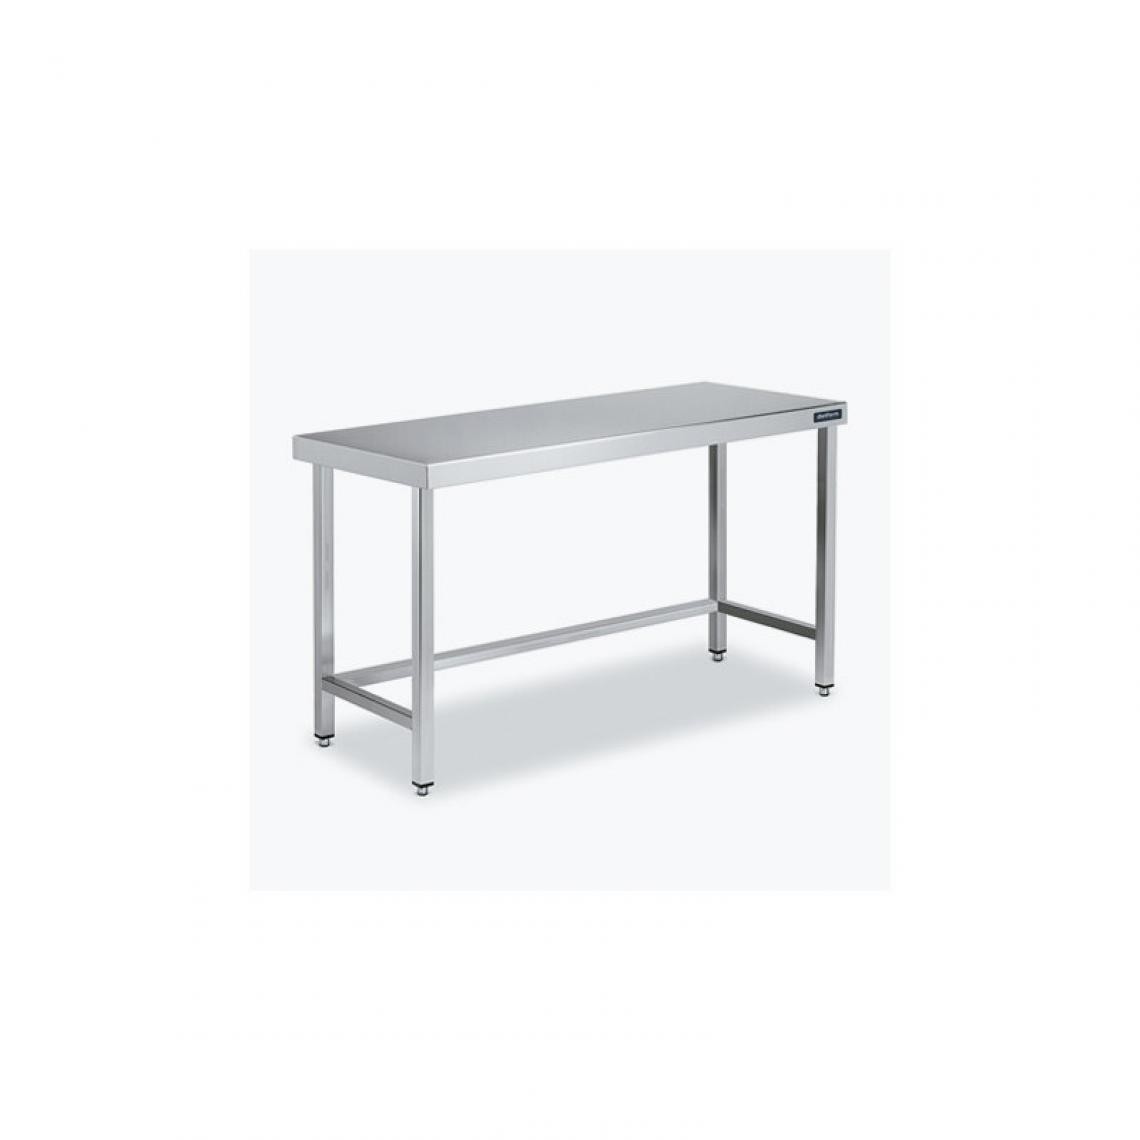 DISTFORM - Table Centrale 600x900 avec Renforts - Distform - Inox 18/102600x900x850mm - Tables à manger